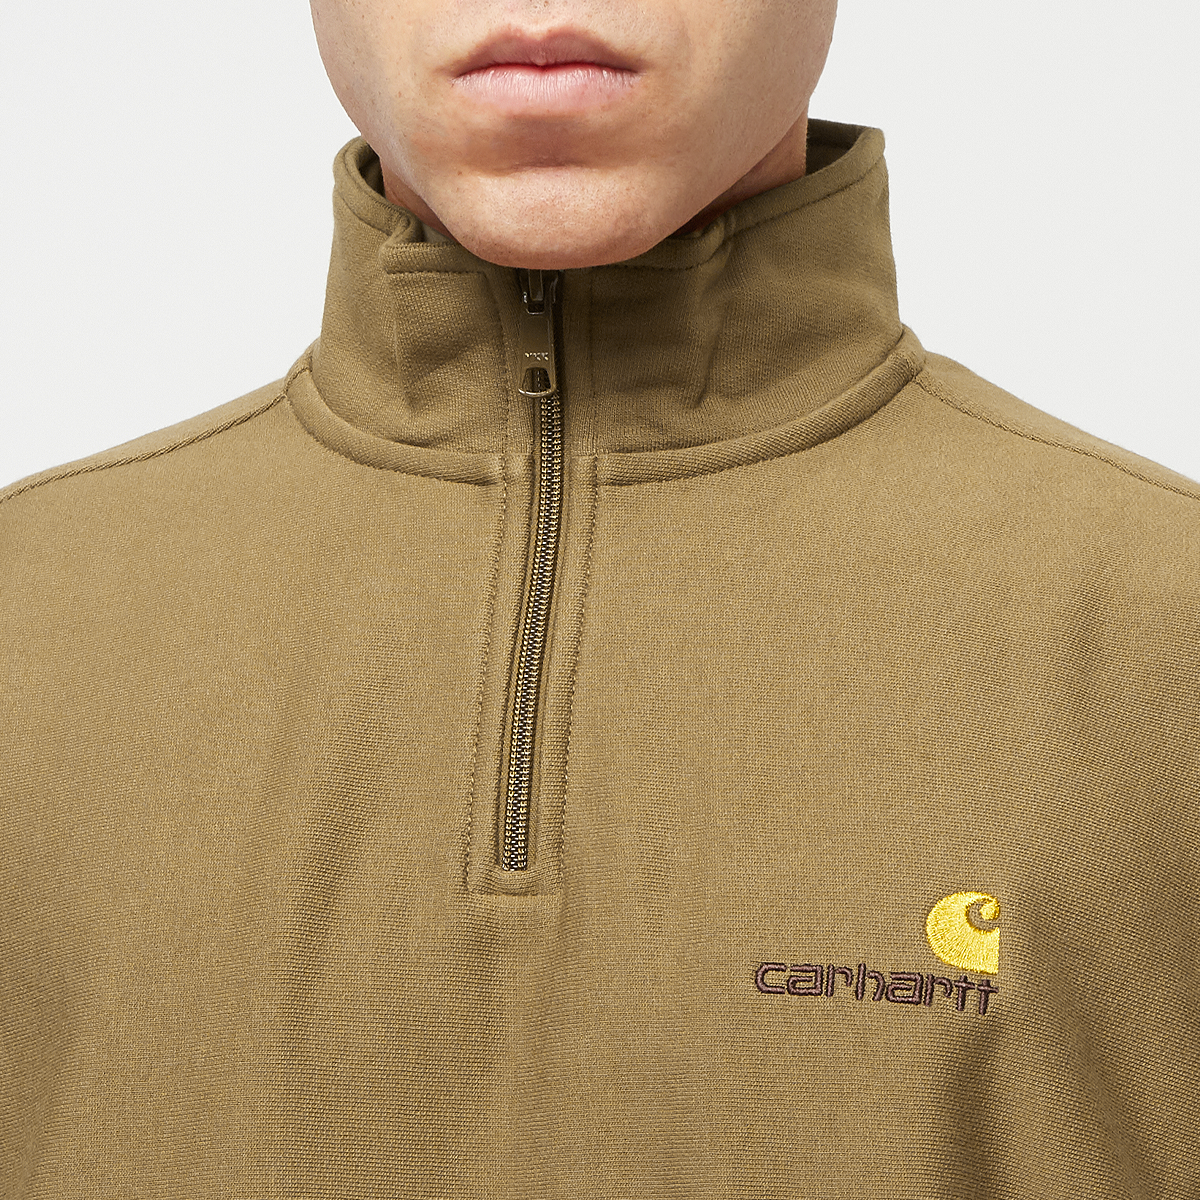 Carhartt WIP Half Zip American Script Sweatshirt Hooded vesten Kleding hamilton brown maat: M beschikbare maaten:S M L XL